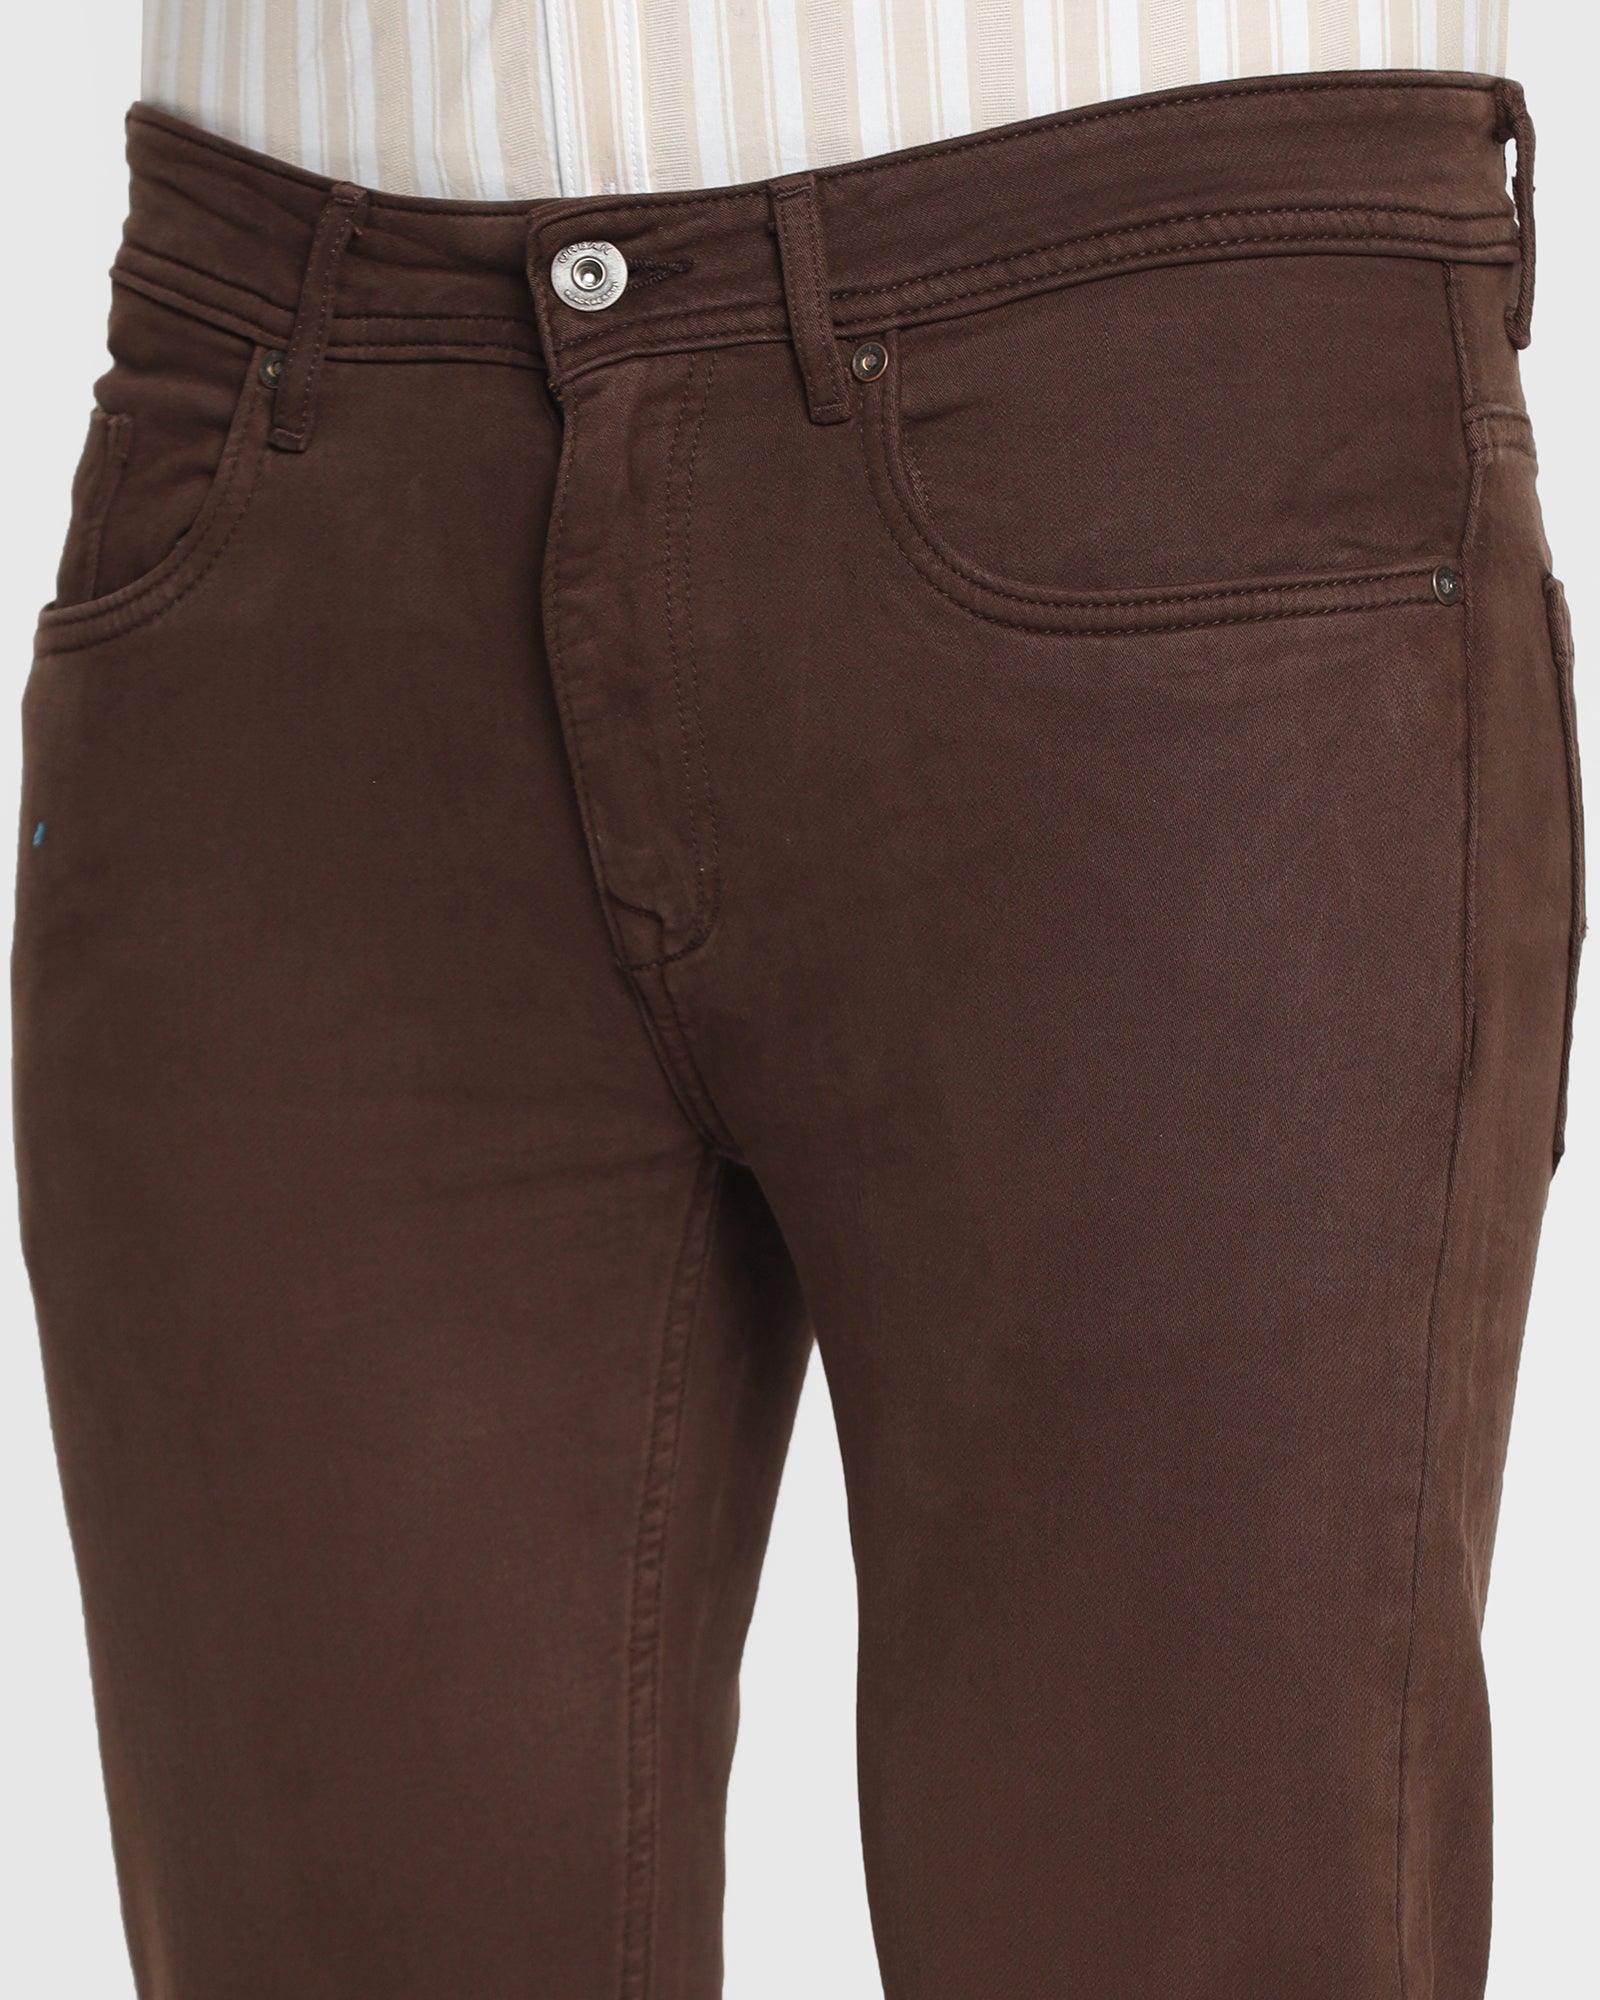 MApete Denim Jeans, brown soil